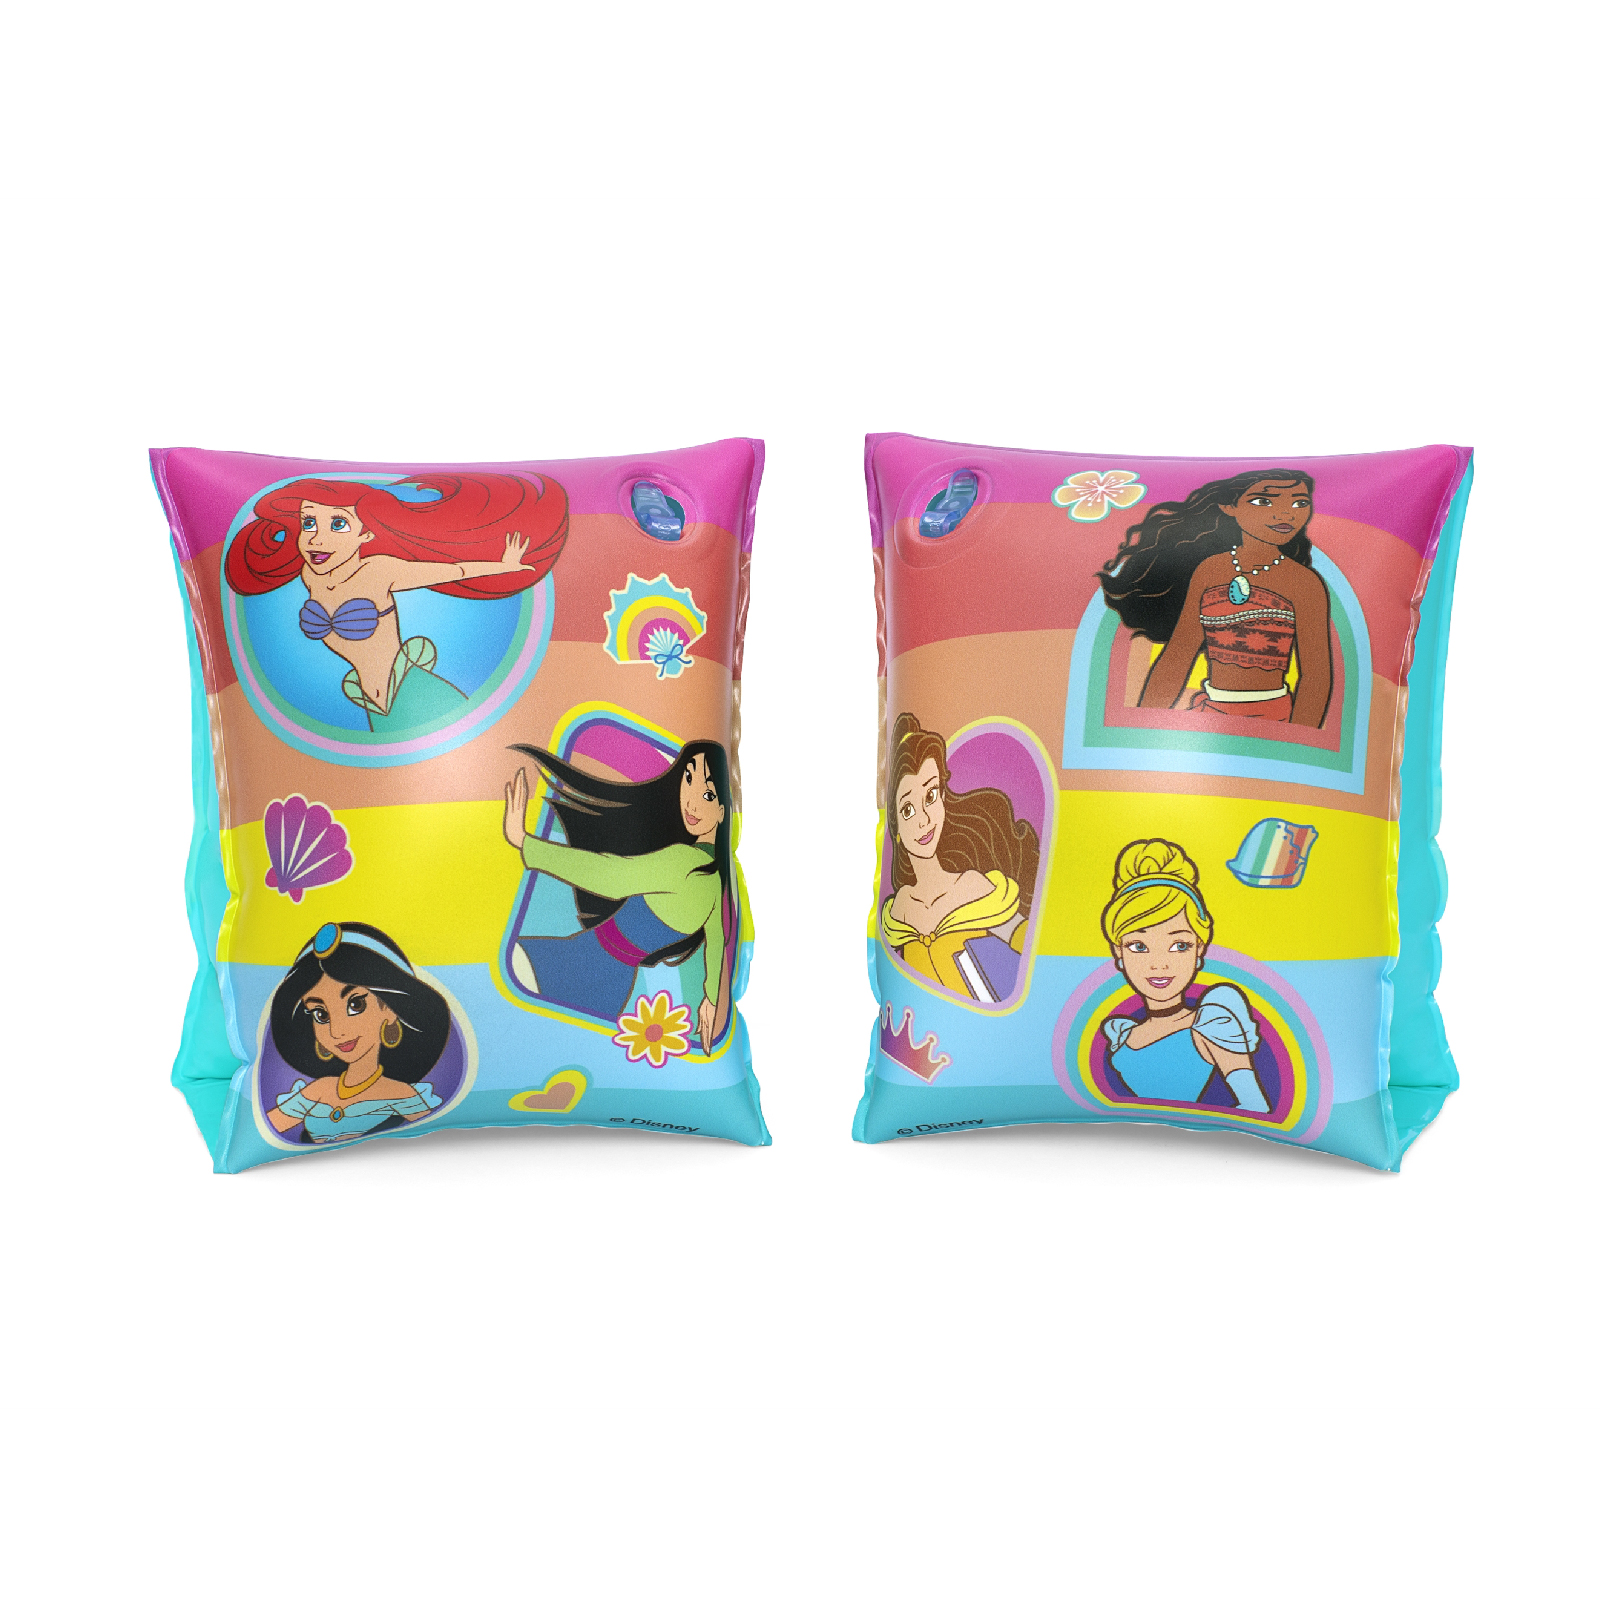 Manguitos Hinchables Para Niños De 3 A 6 Años Bestway 17x12 Cm Diseño De Princesas Disney Doble